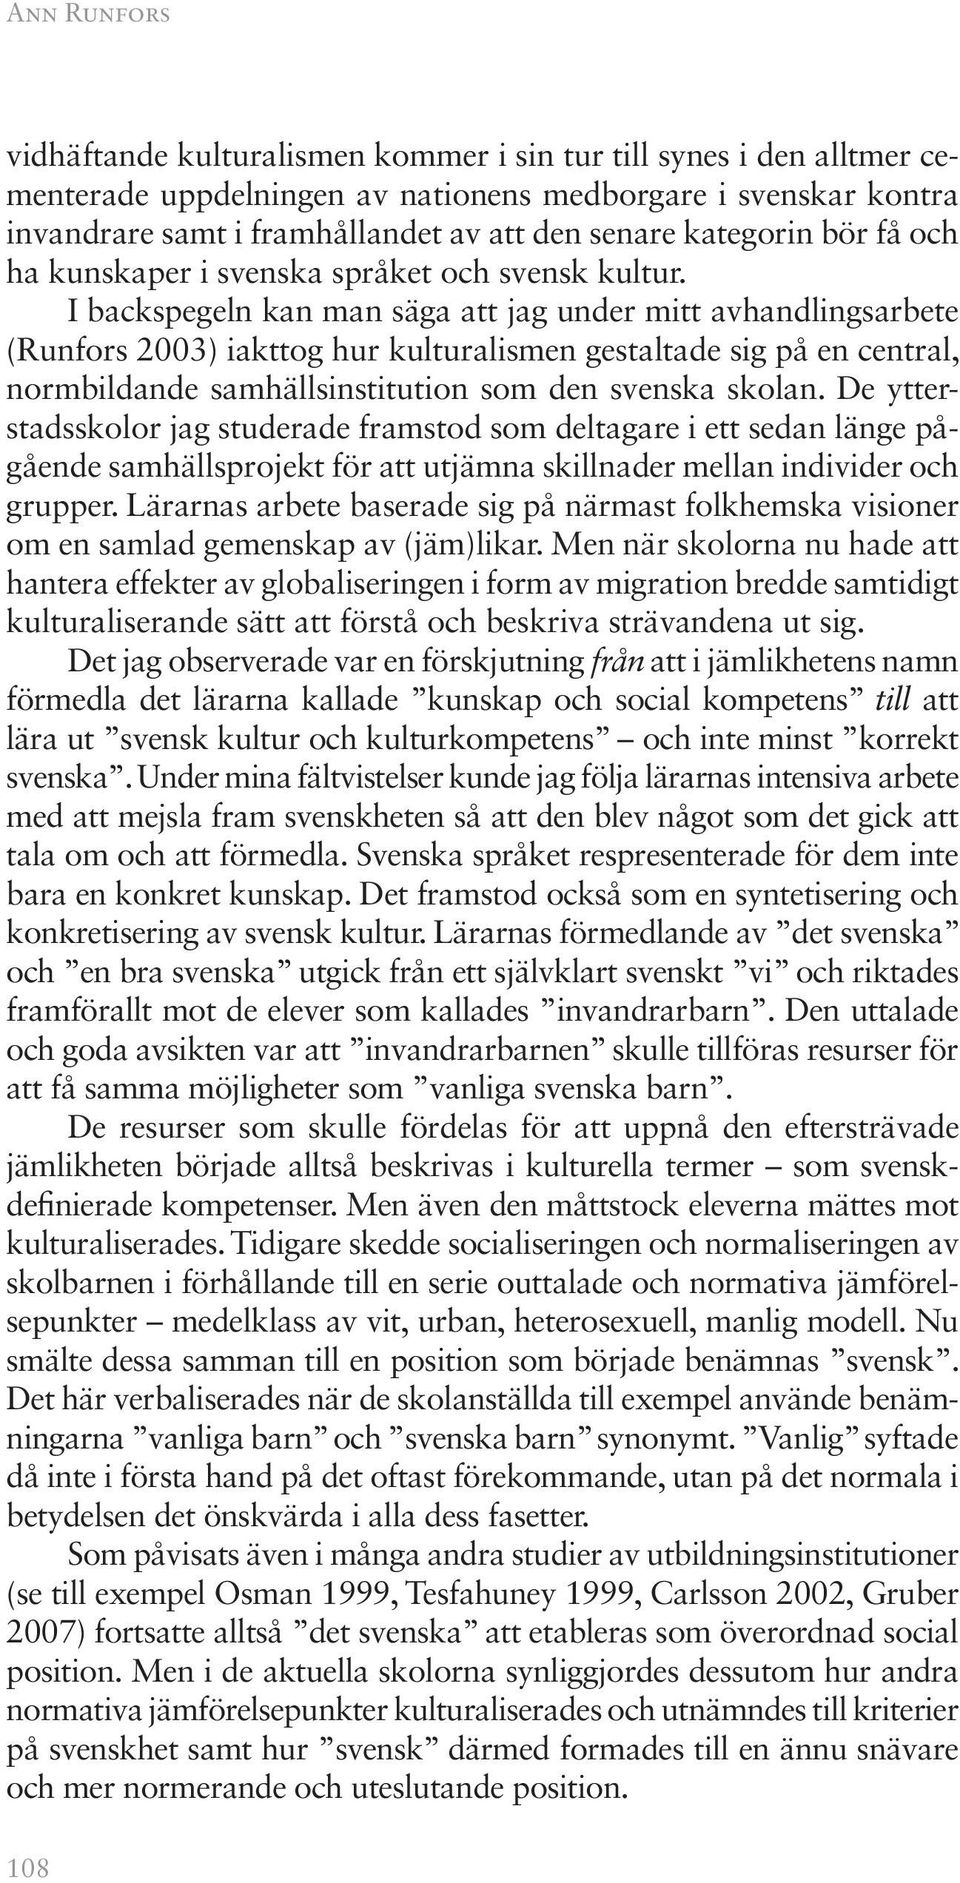 I backspegeln kan man säga att jag under mitt avhandlingsarbete (Runfors 2003) iakttog hur kulturalismen gestaltade sig på en central, normbildande samhällsinstitution som den svenska skolan.